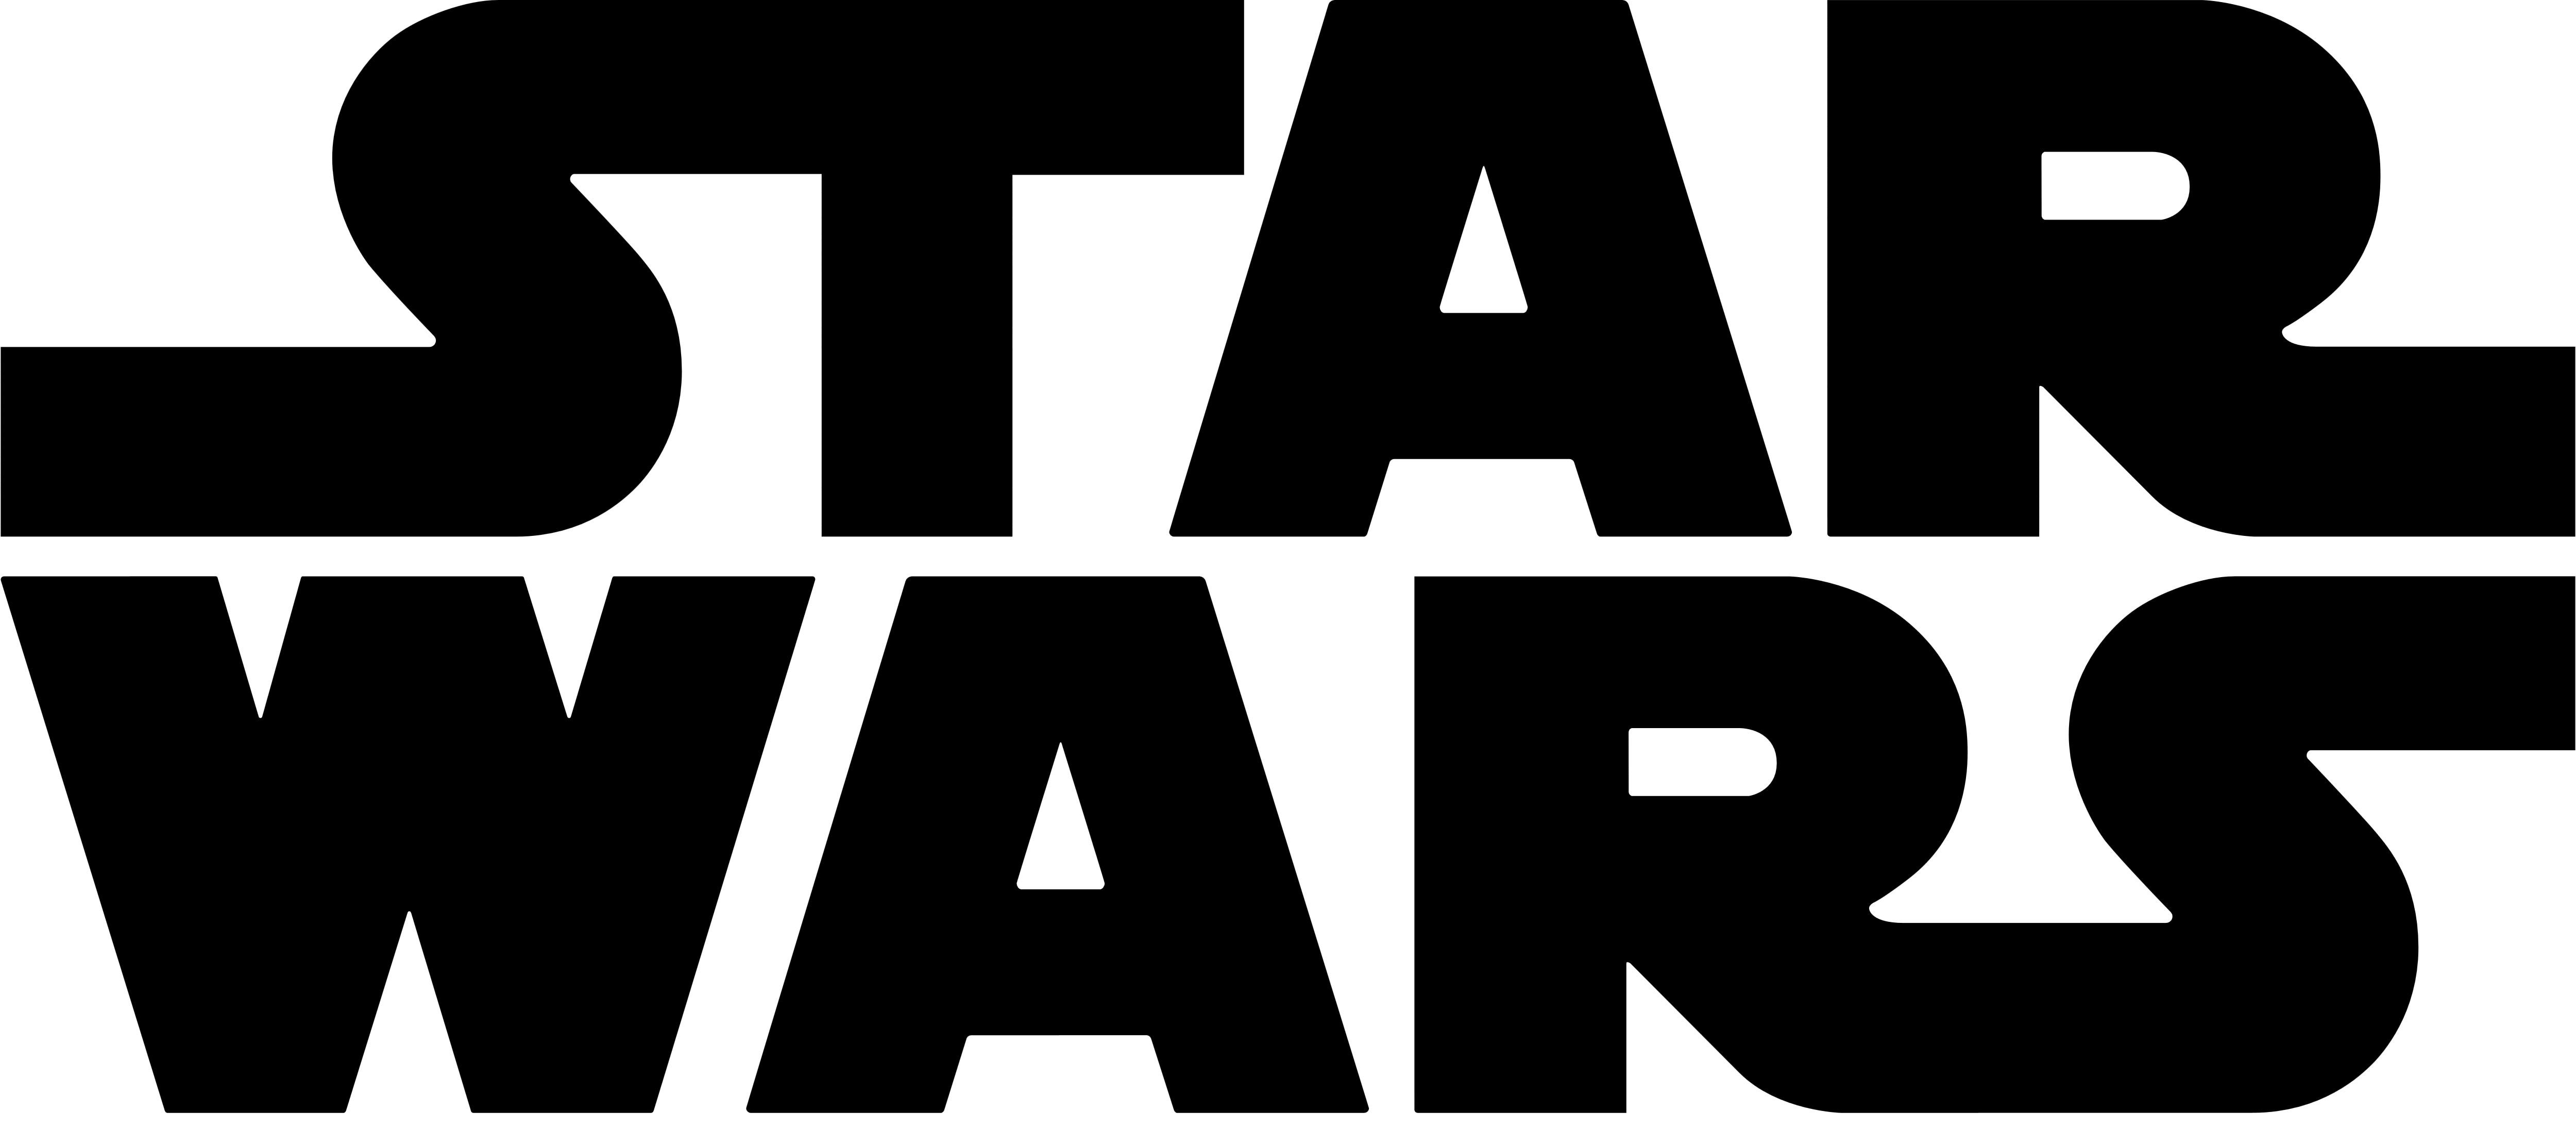 File Transparan Logo Star Wars